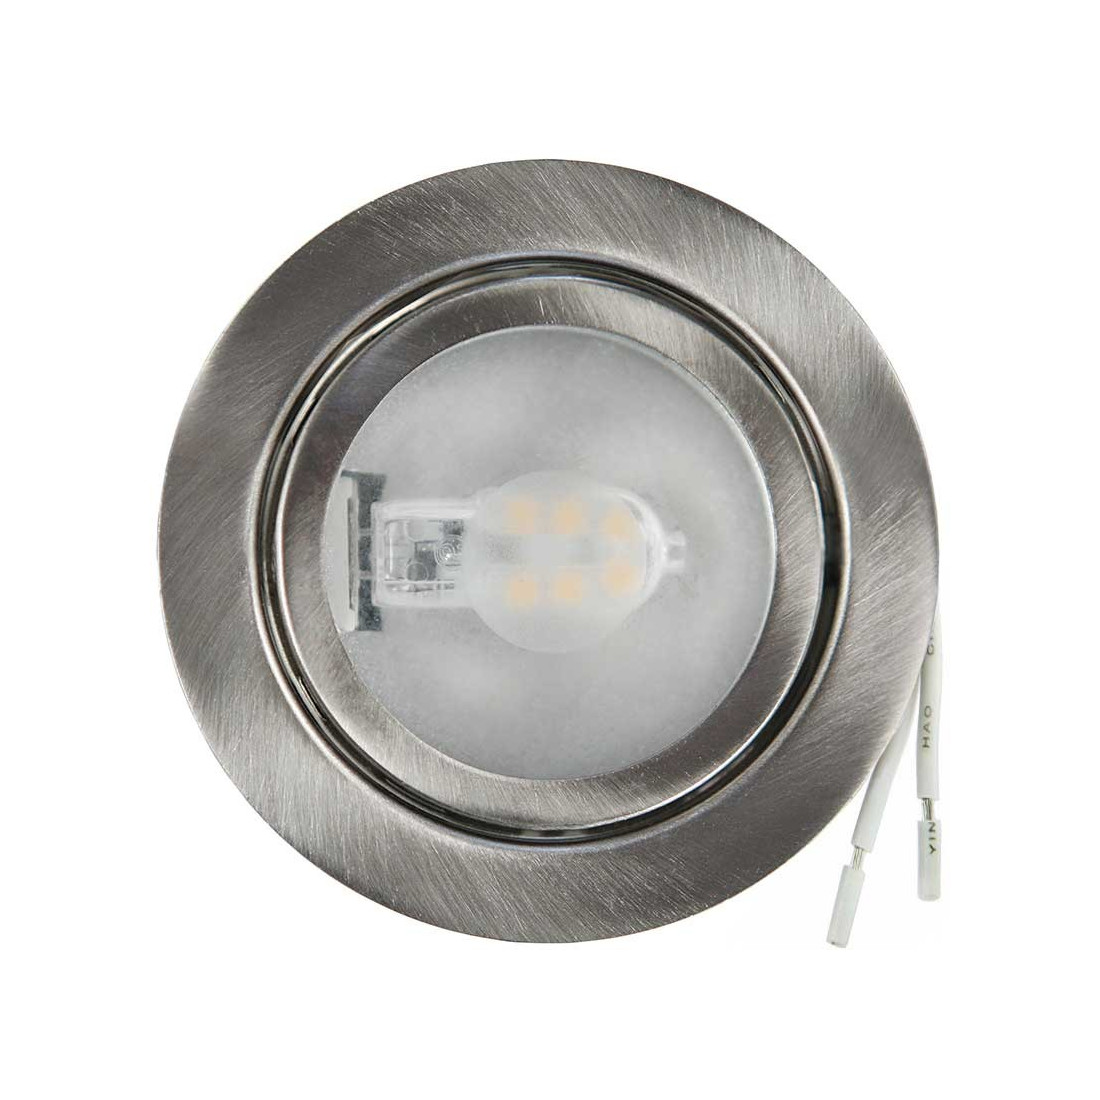 Spot encastrable silver en inox brossé culot G4 pour lampe L